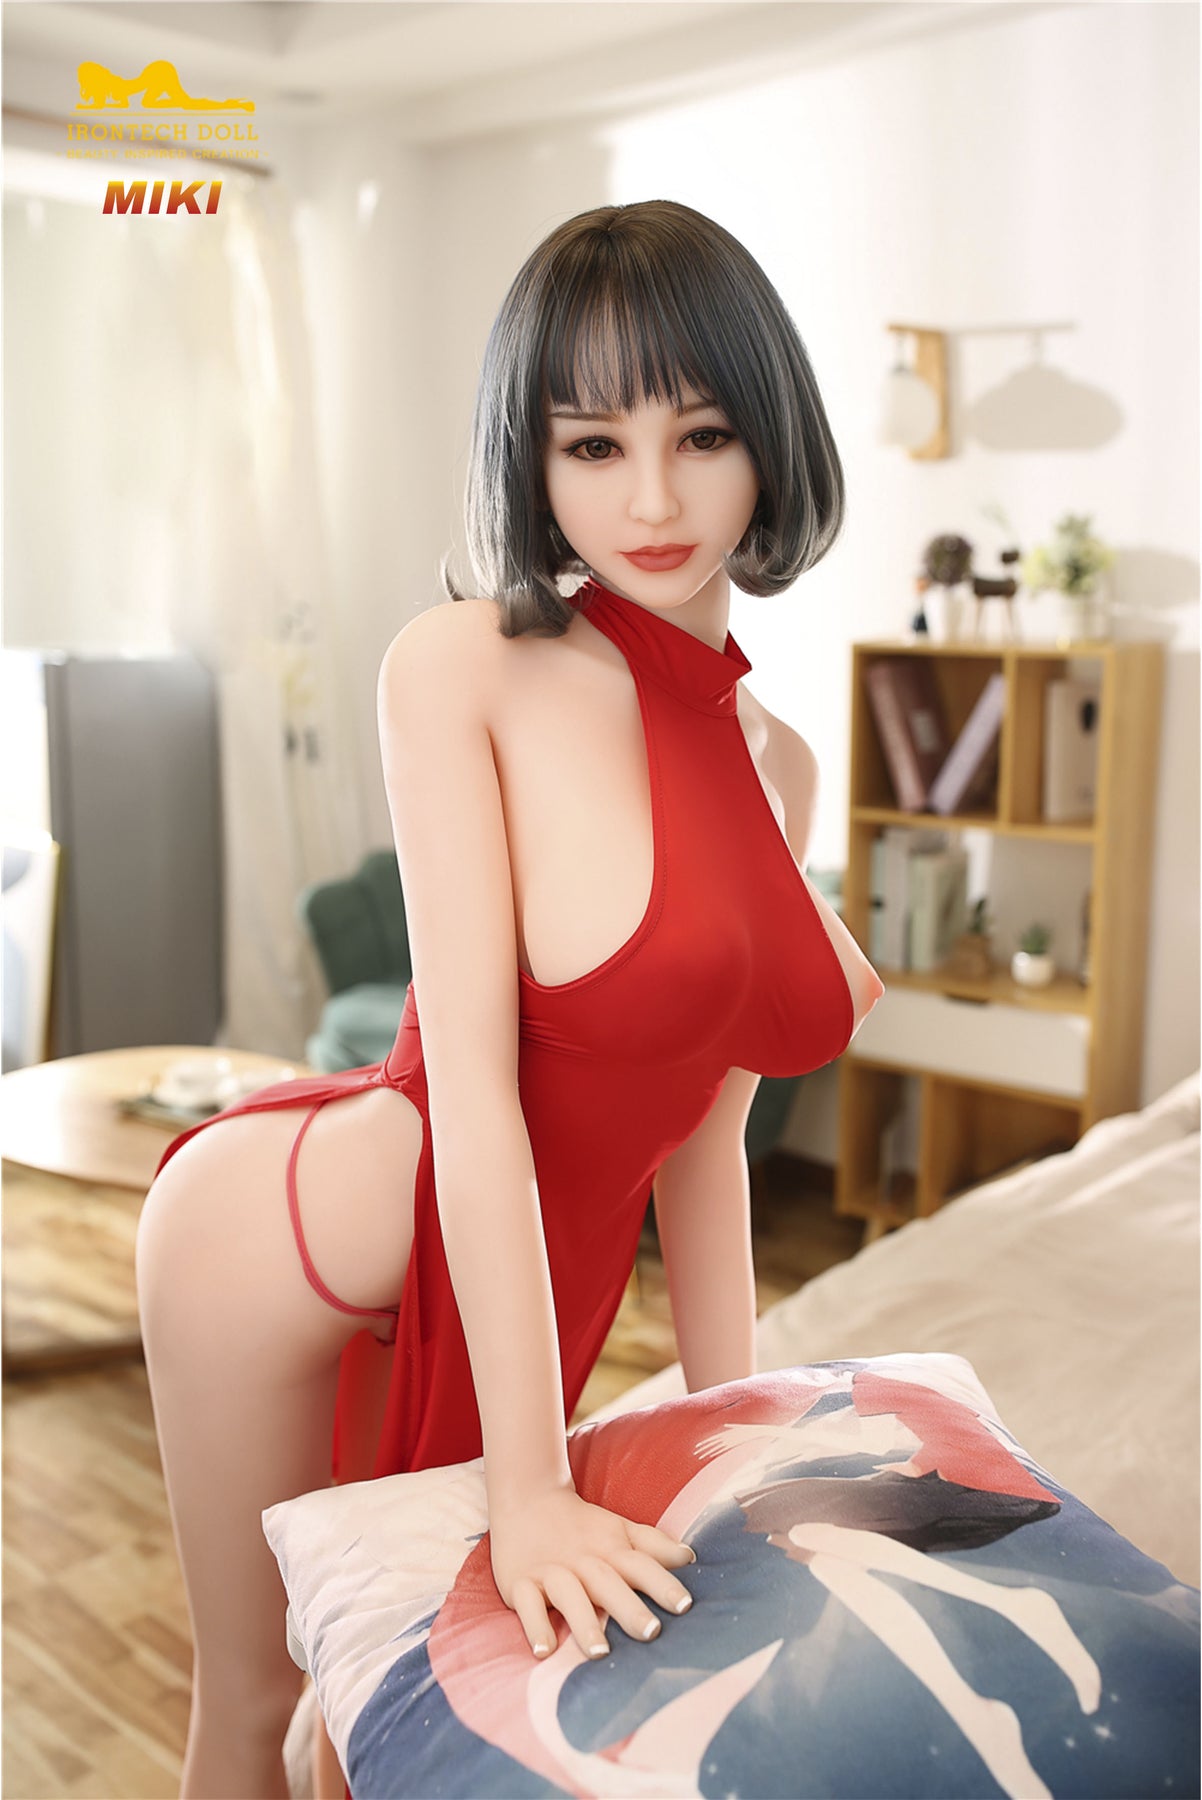 Unforgettable asiatische sex doll